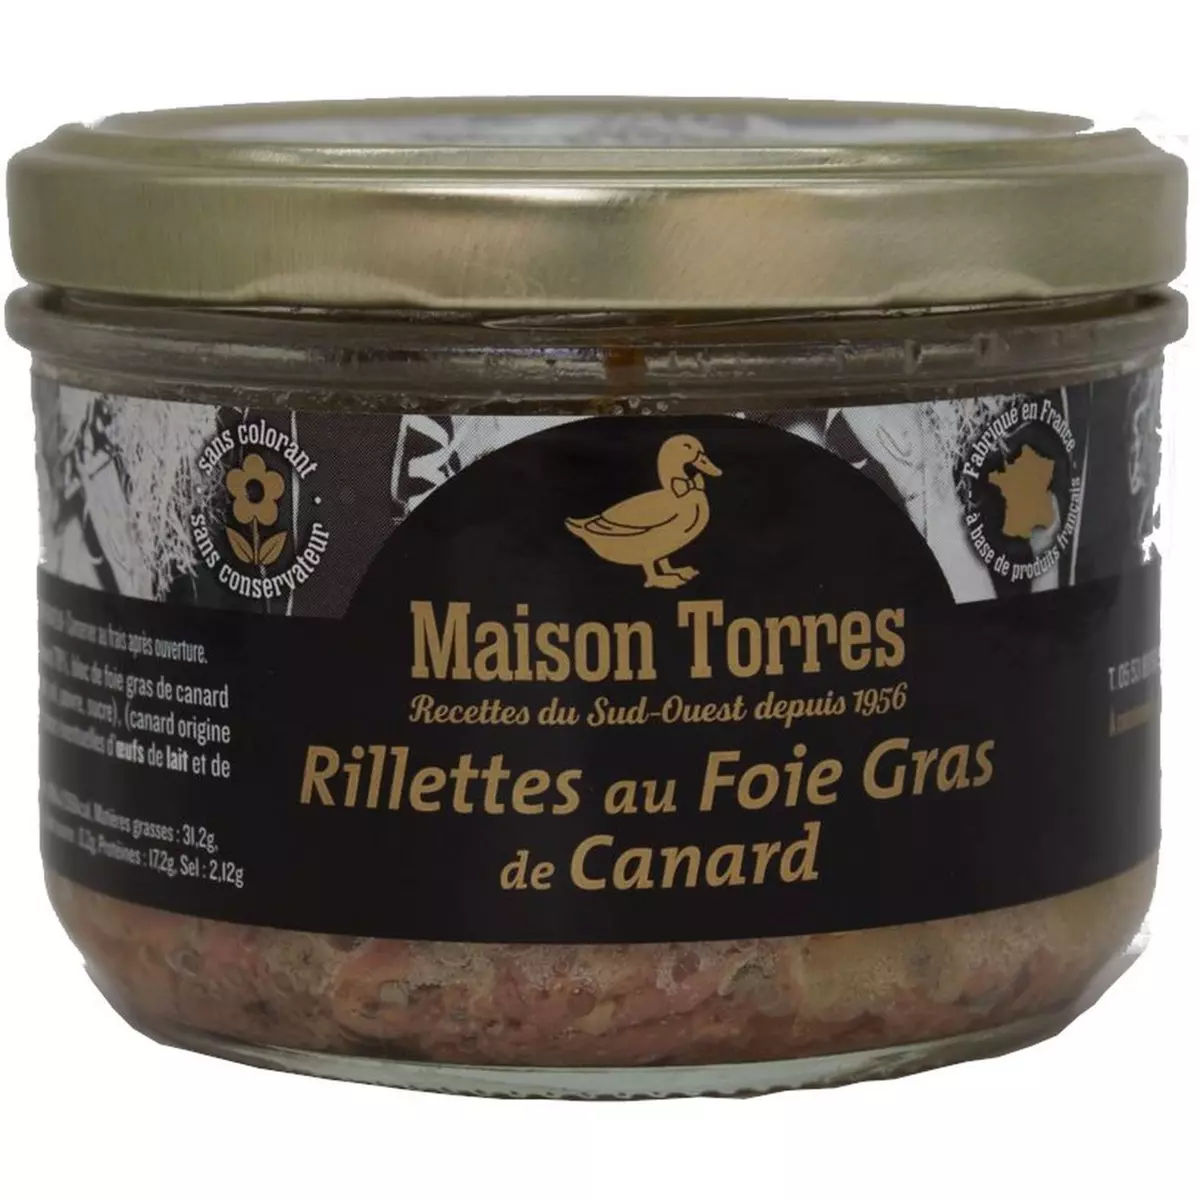 MAISON TORRES Rillettes au Foie Gras de Canard 180g